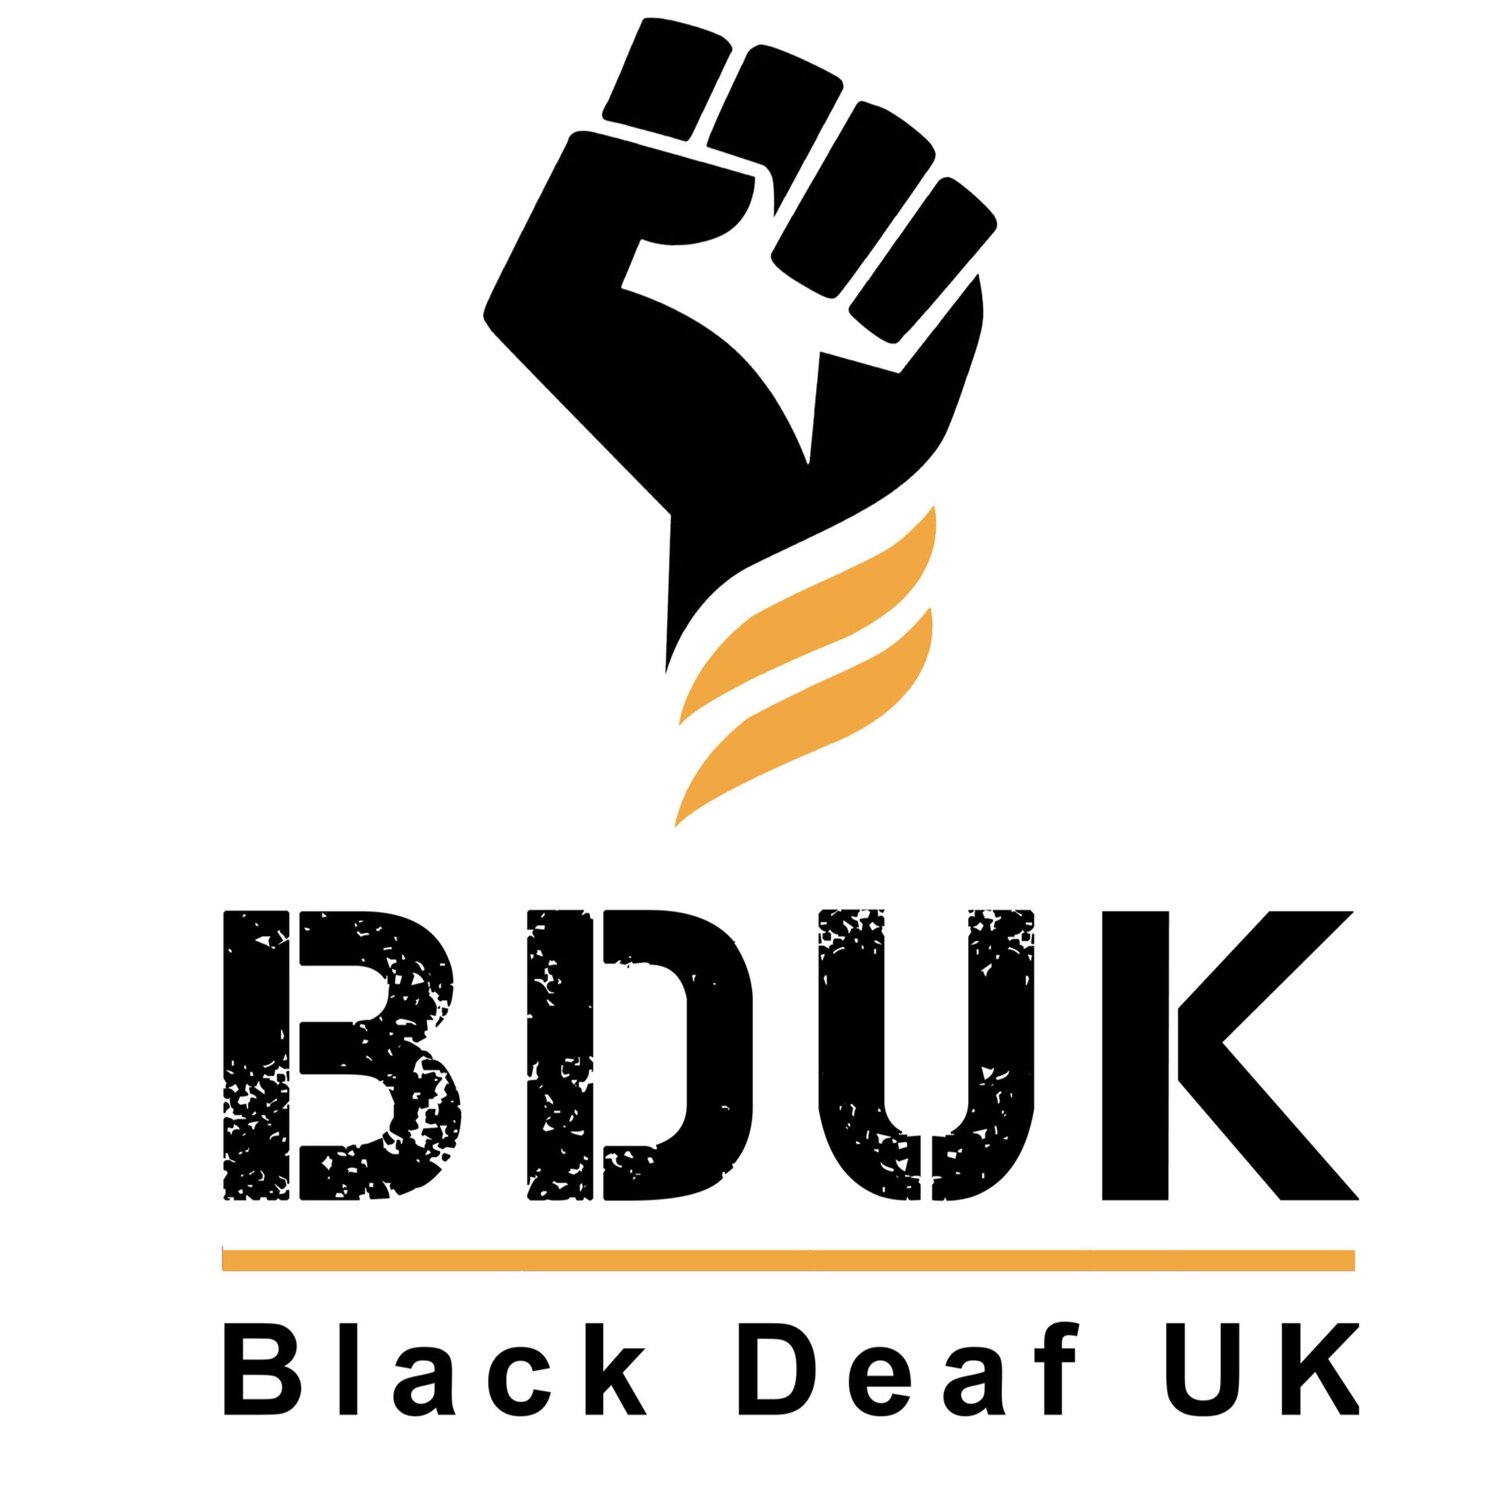 Black Deaf UK